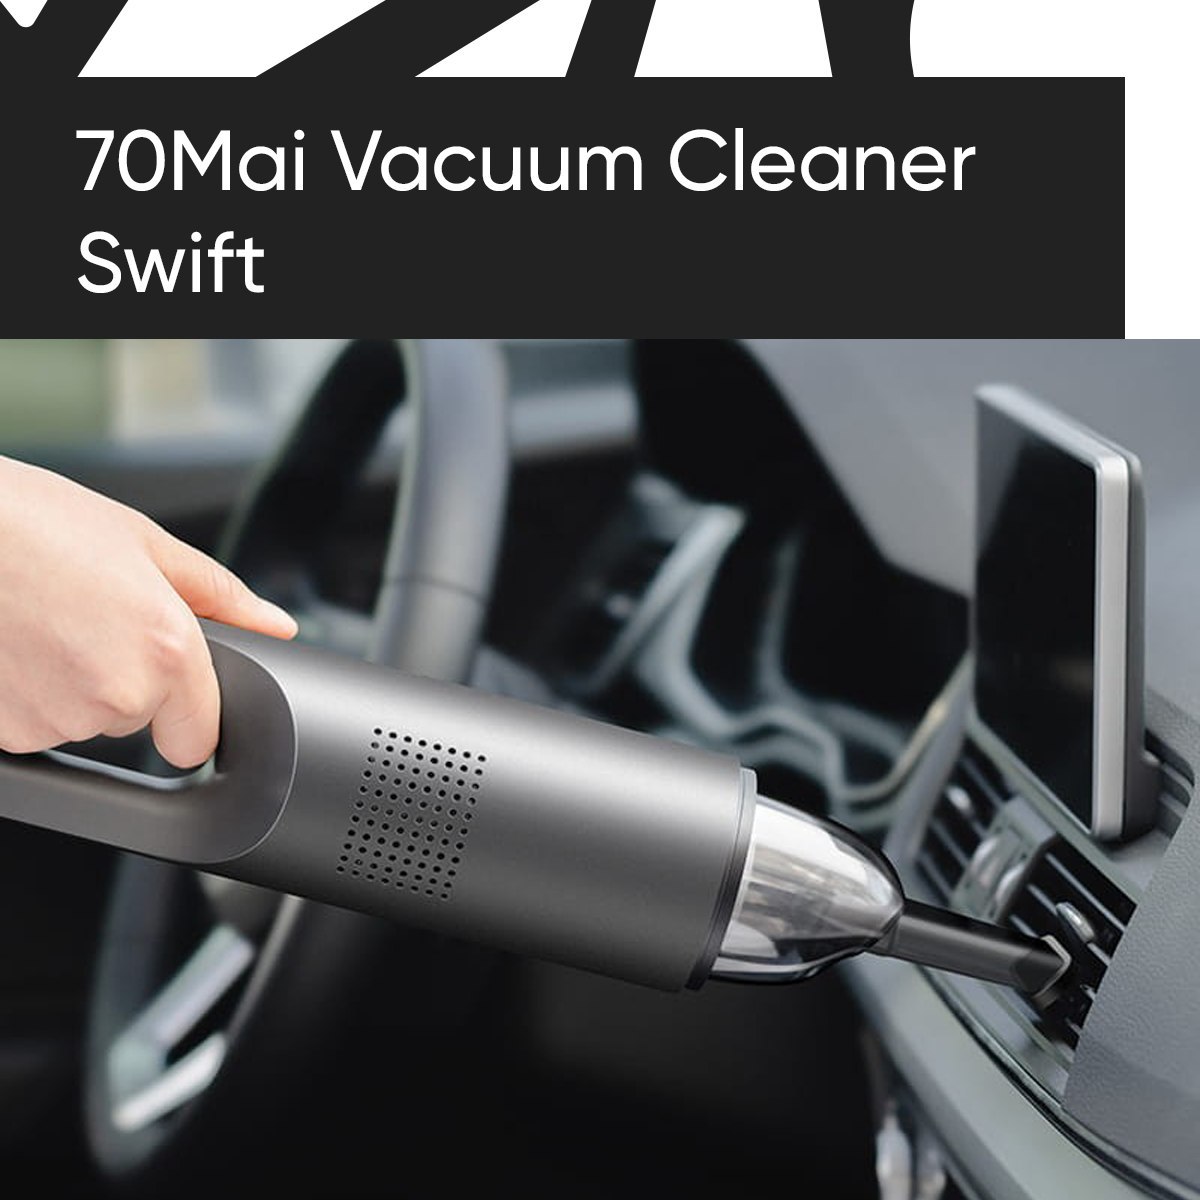 70mai vacuum cleaner. Автомобильный пылесос 70mai Vacuum Cleaner Swift. Автомобильный пылесос Xiaomi 70mai. Фильтр для автомобильного пылесоса 70 mai Vacuum Cleaner Swift.